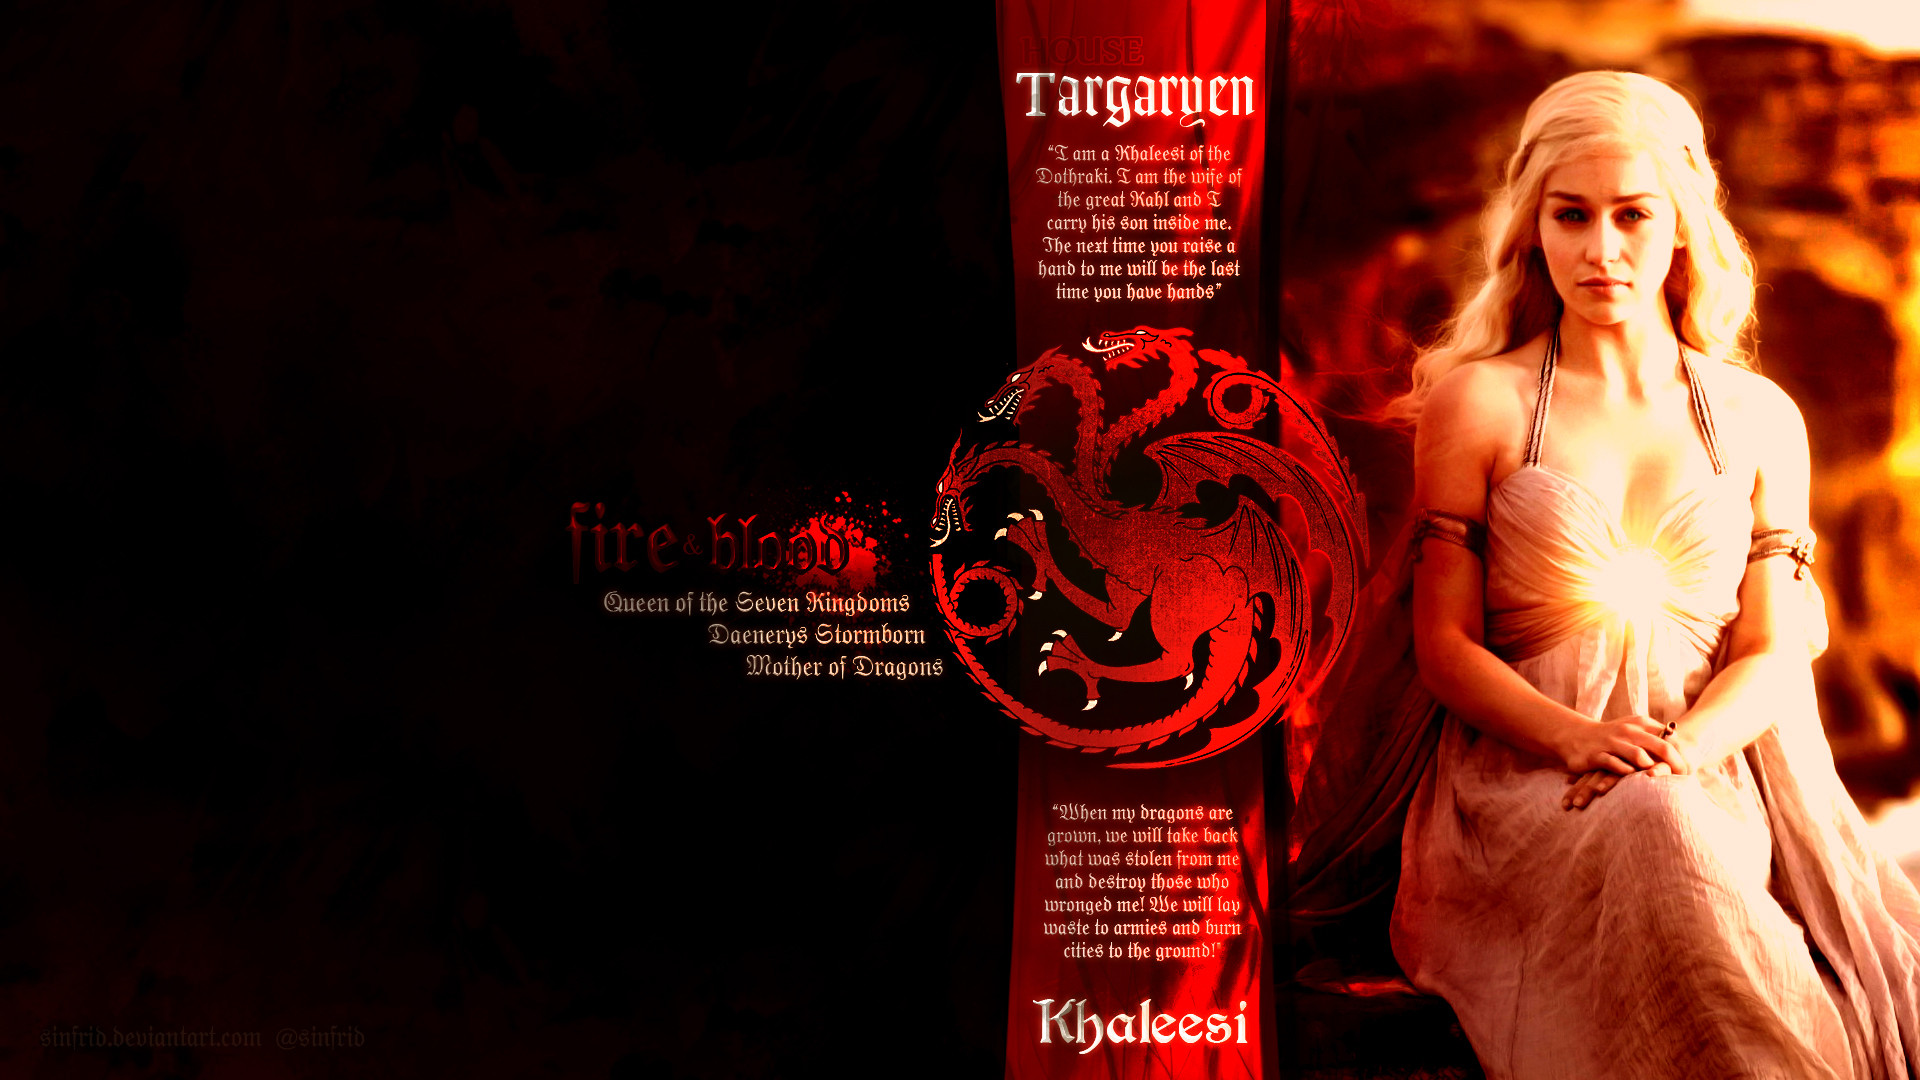 Game of Thrones Daenerys Targaryen HD Wallpaper